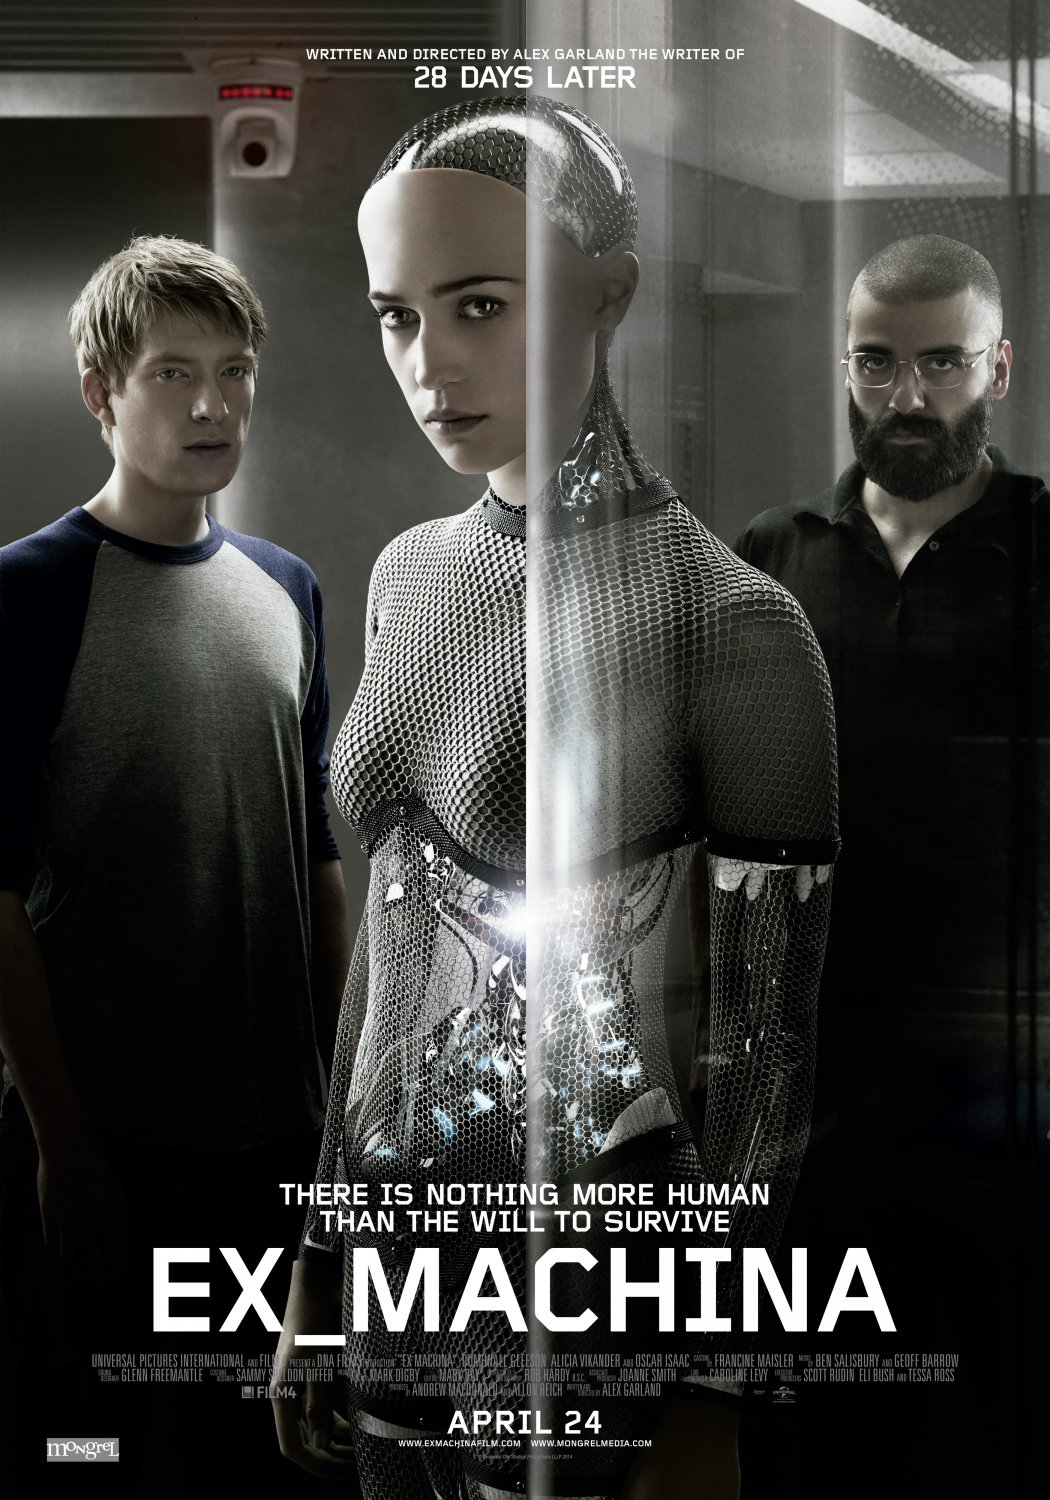 Ex-Machina Movie Poster 13x19 inches